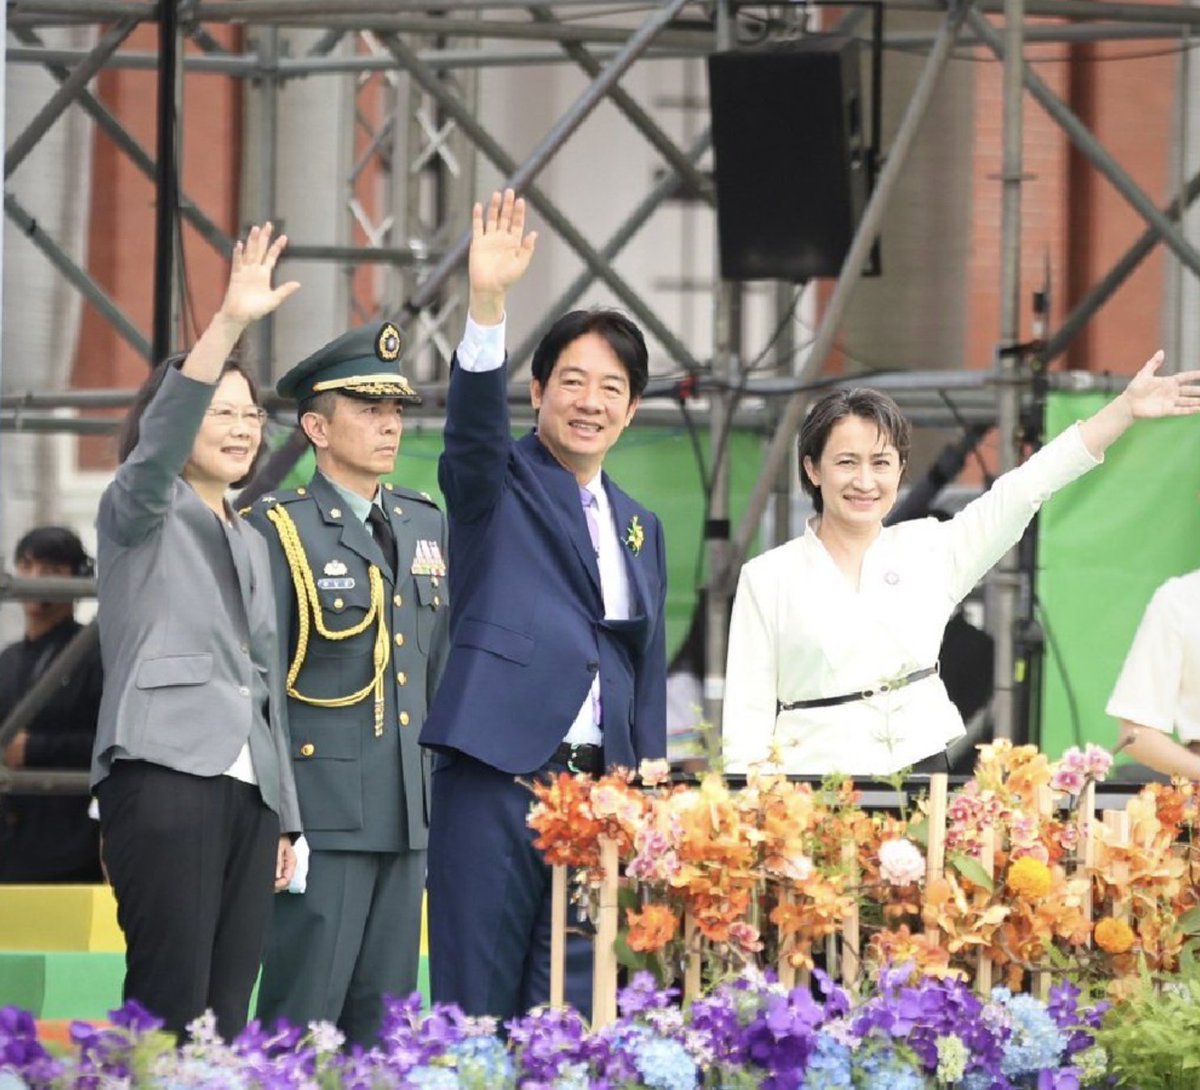 「台湾をよりよく､より明るい未来へと導いてくれると確信しています」との蔡英文前総統のエールに「貴女のリーダーシップと､台湾をよりよい地に導いてくれた事に感謝します｡意志を引き継ぎ､台湾が世界の舞台で更に輝くよう努めていきます」と頼清徳新総統｡東アジアの平和と安定を担う信念の人に期